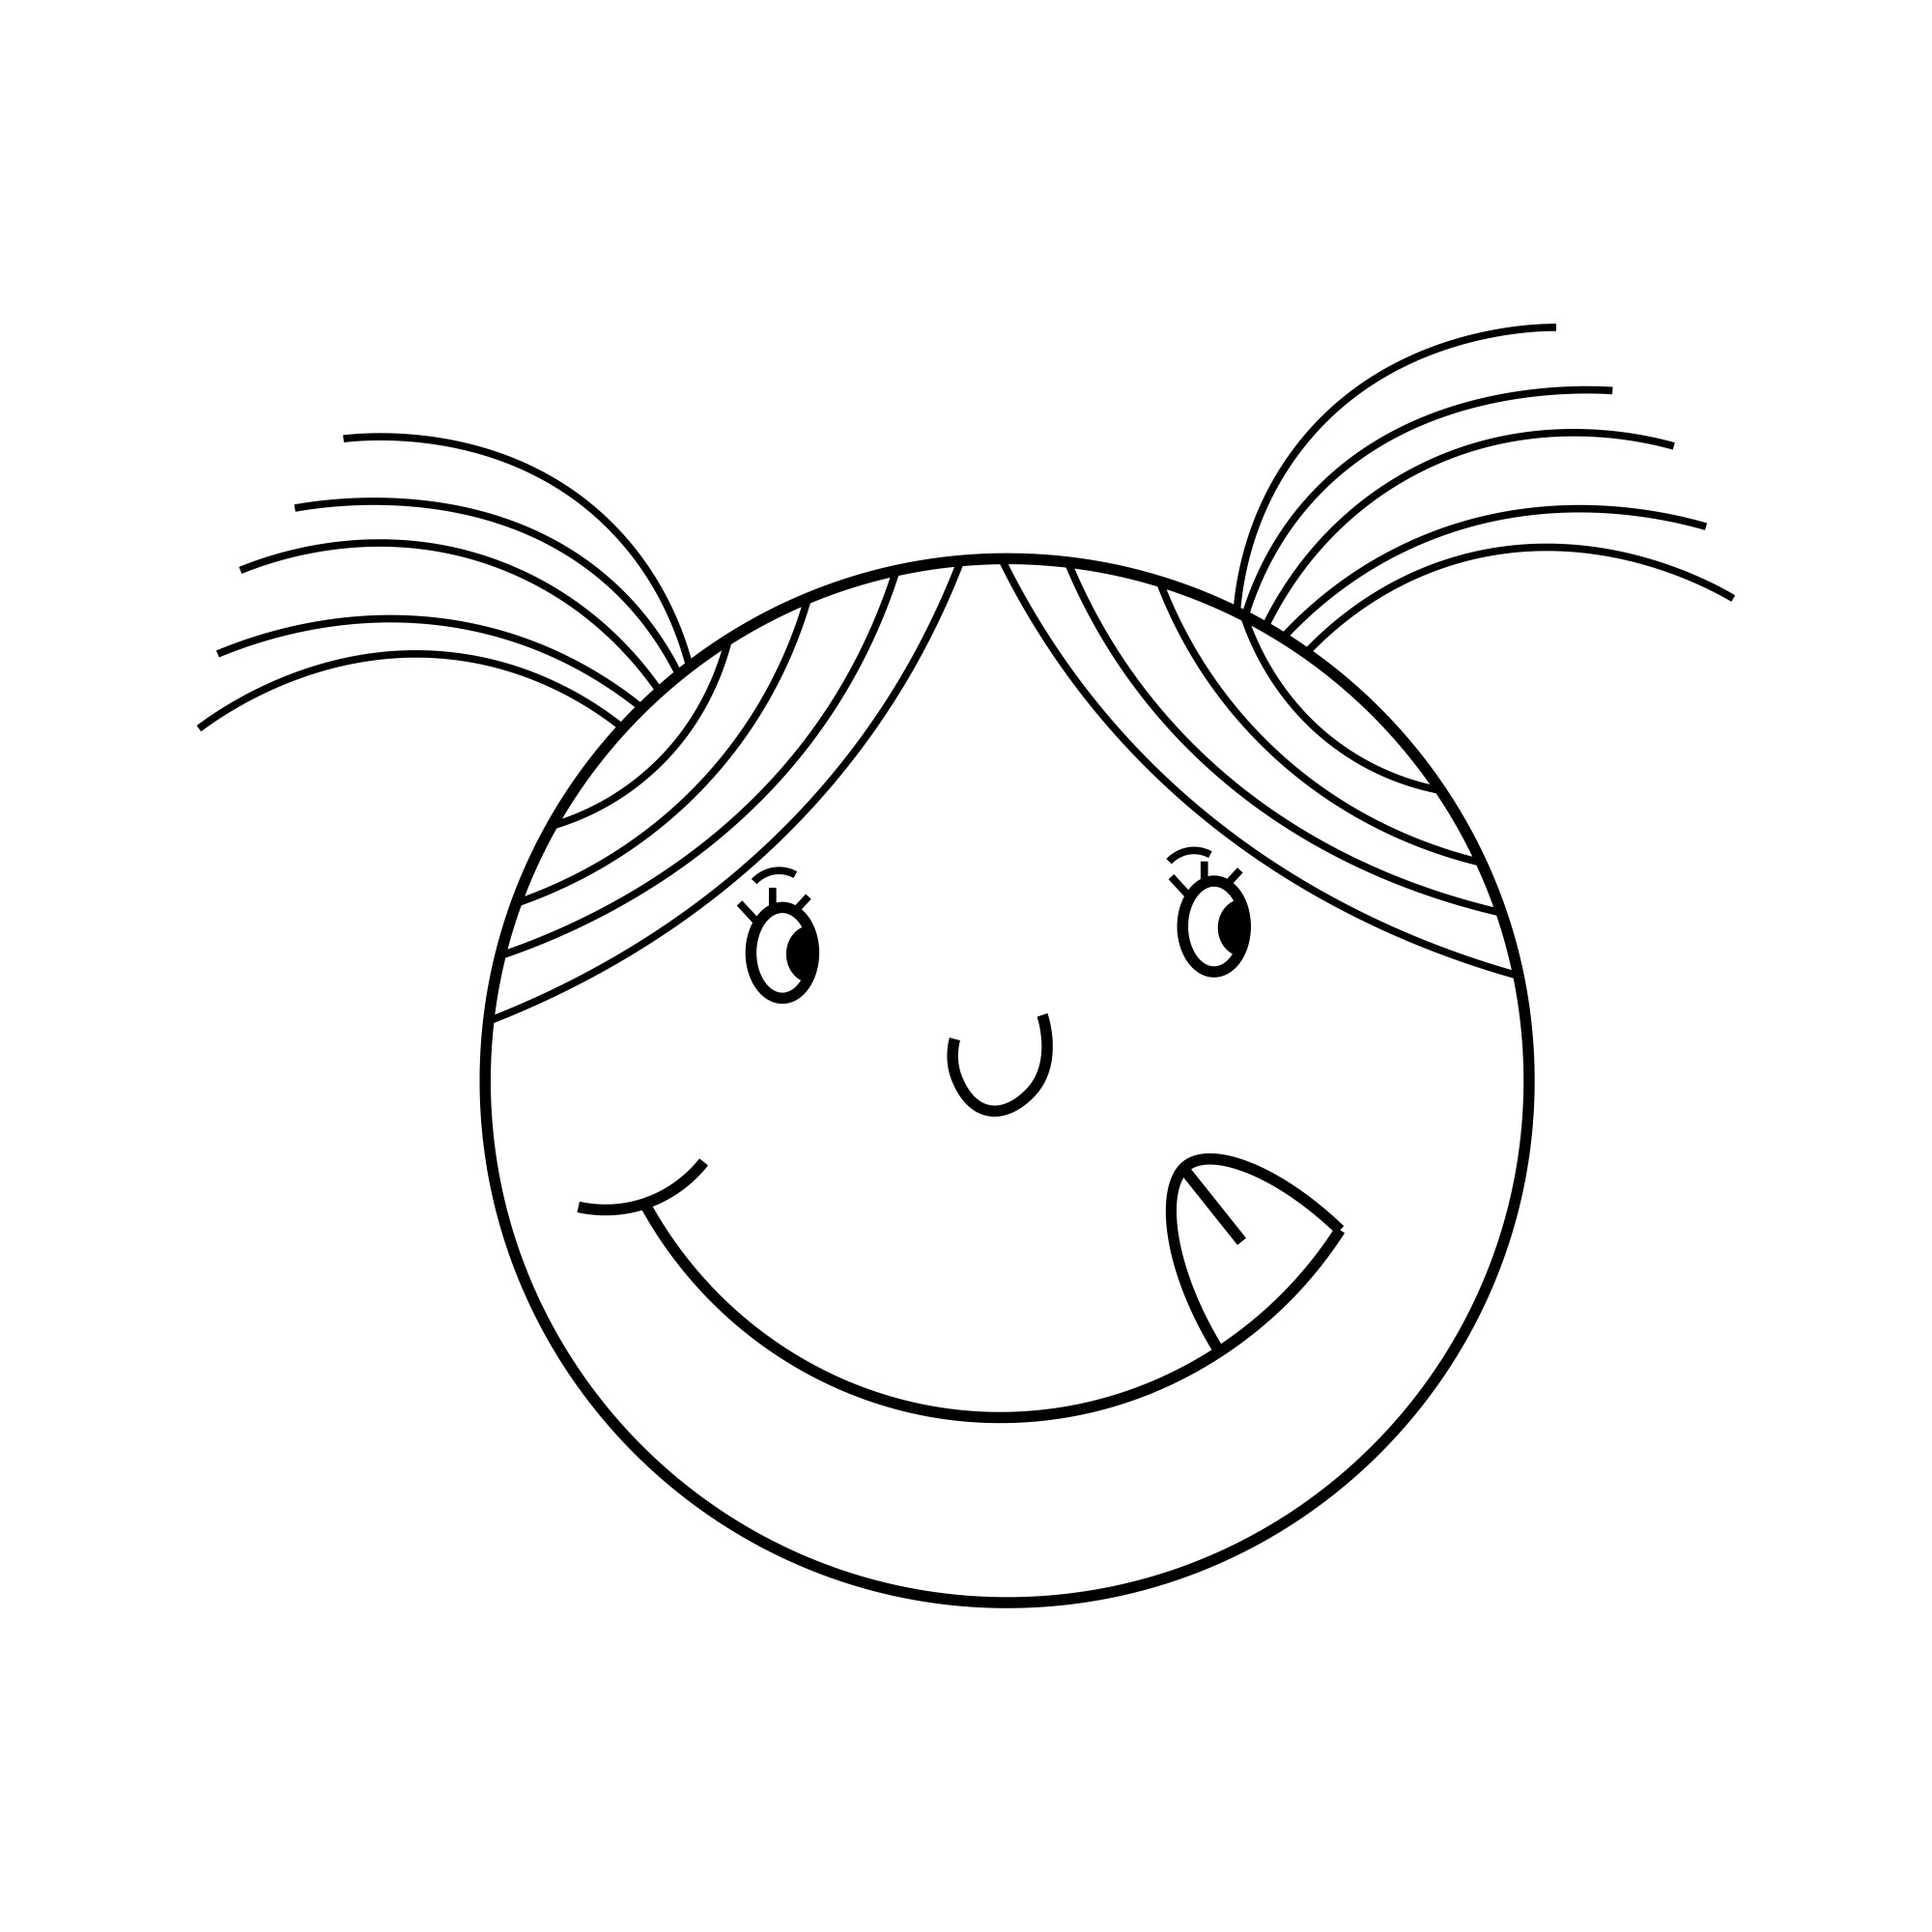 Раскраска для детей: смайлик девочка с косичками